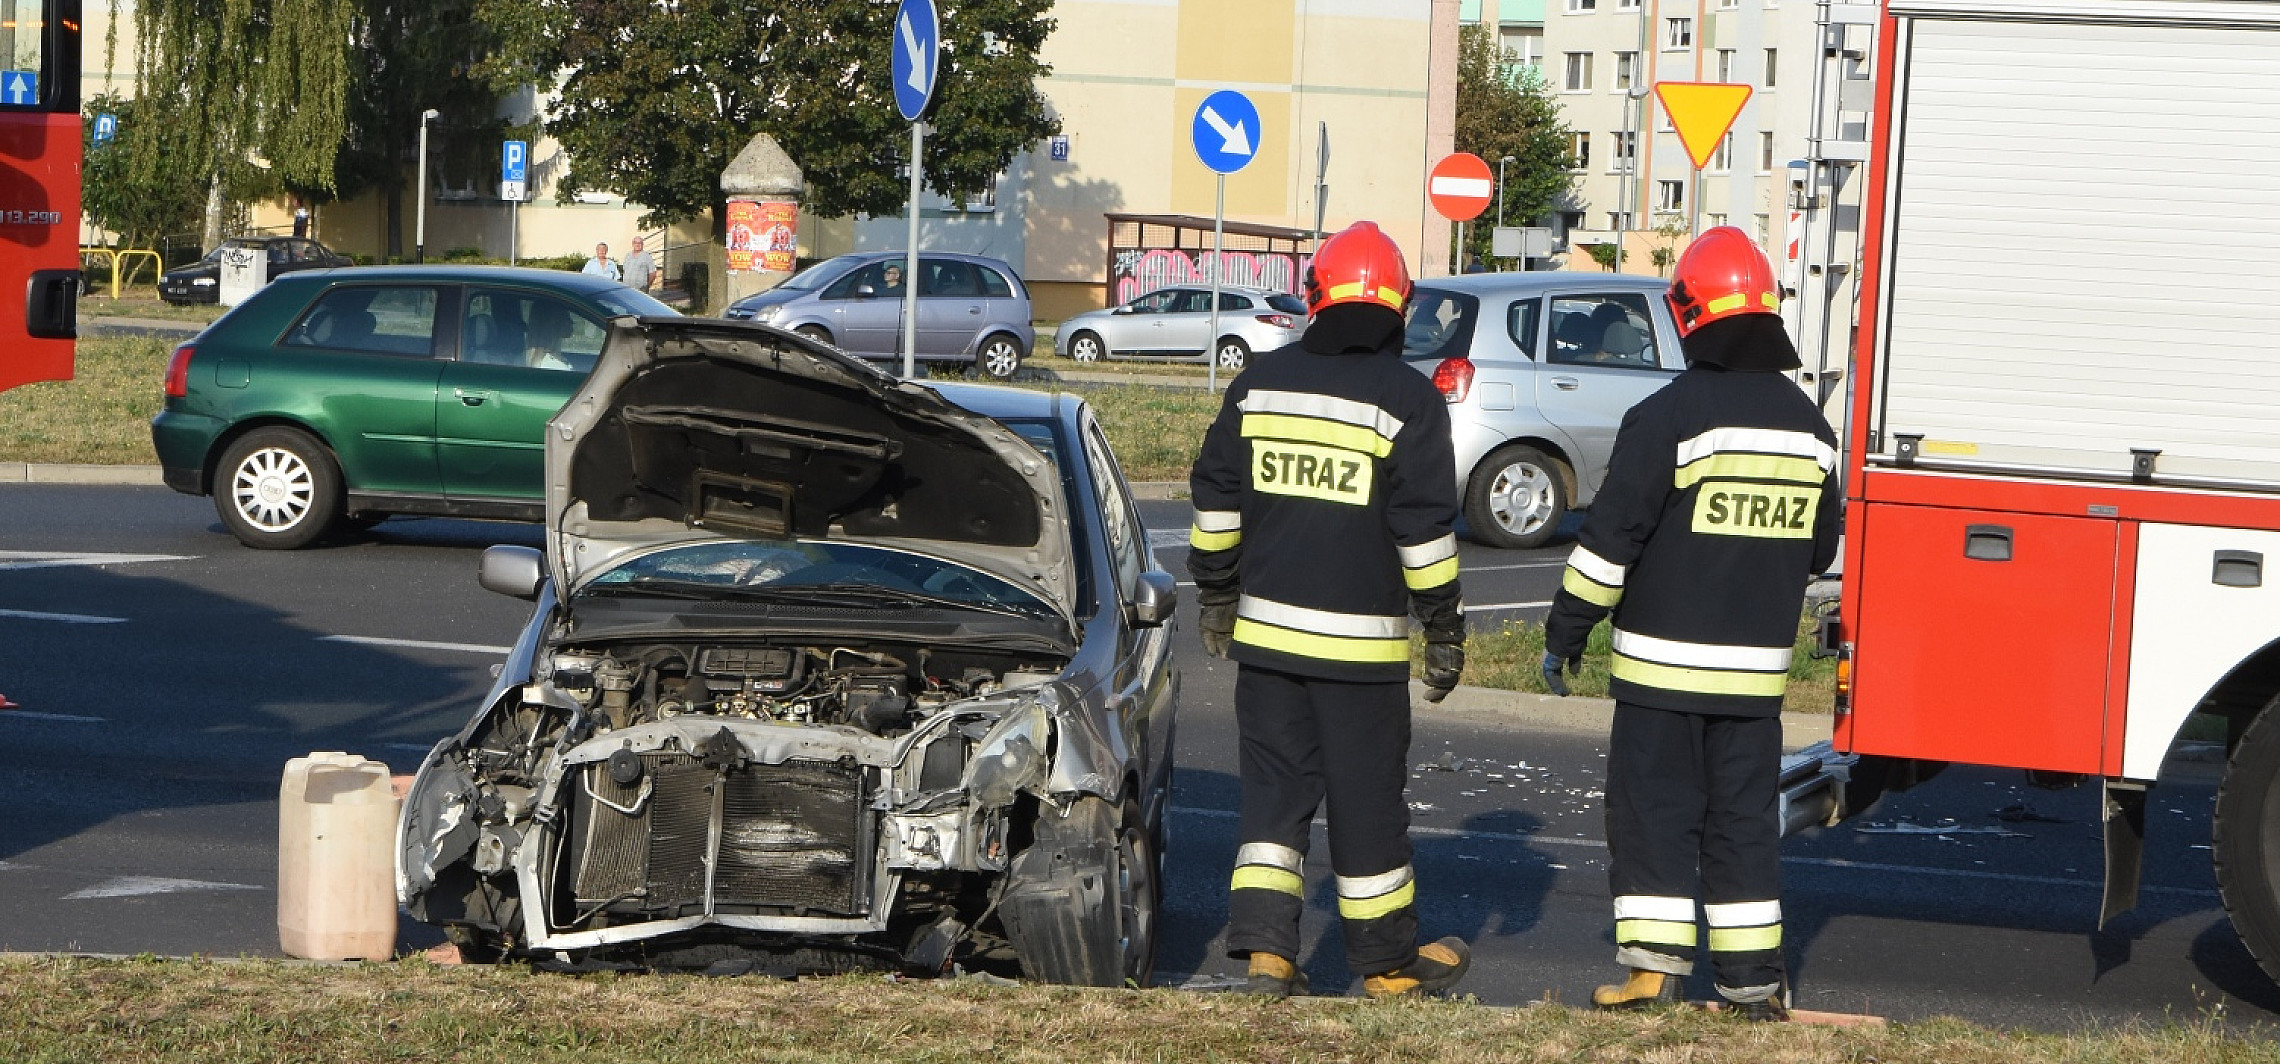 Inowrocław - Zderzenie dwóch aut na Rąbinie